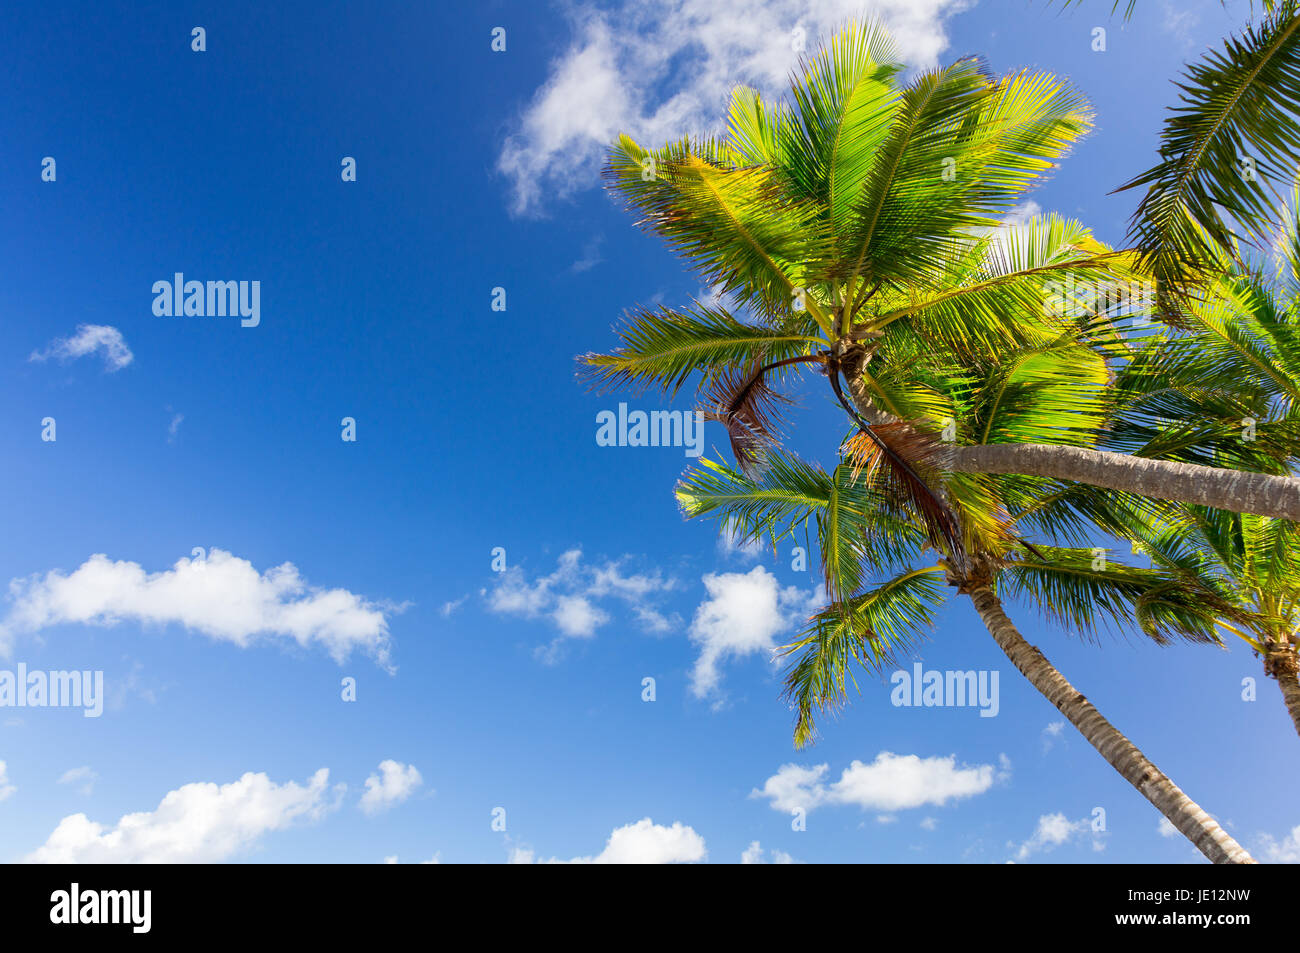 Palme unter strahlend blauen Himmel mit Wolken. Stock Photo